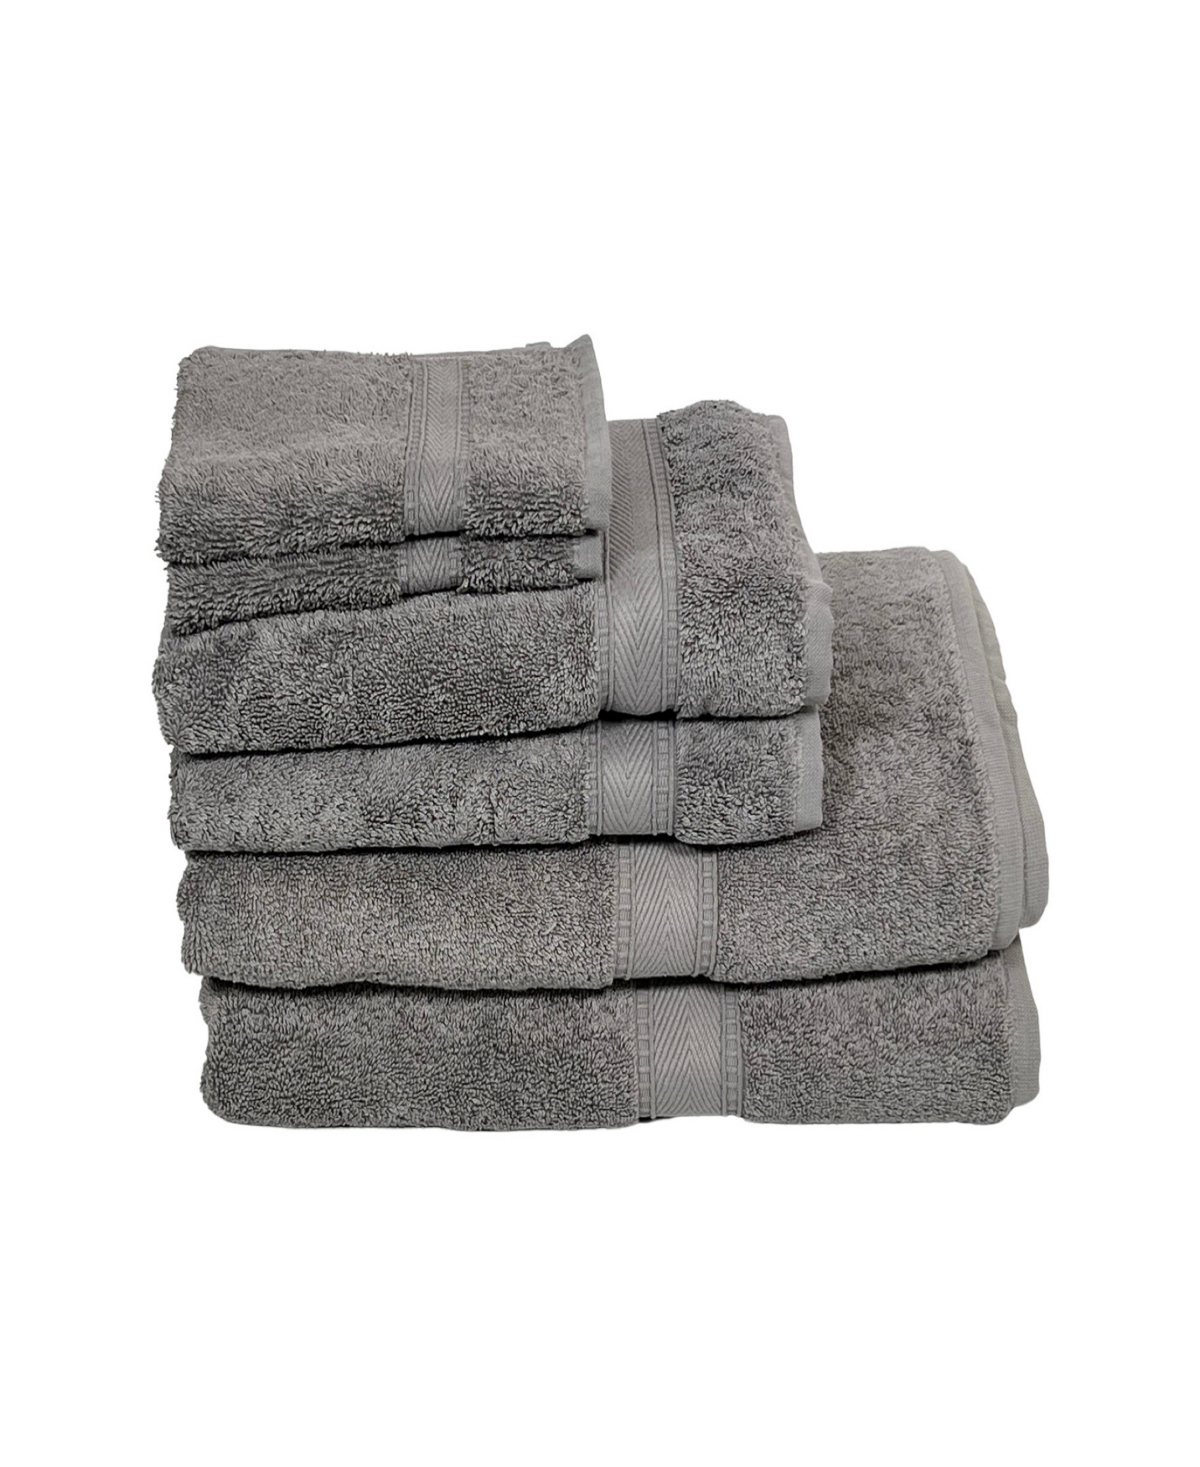 Ozan Premium Home Legend Collection 6 Piece Turkish Cotton Luxury Towel Set Bedding In Dark Gray